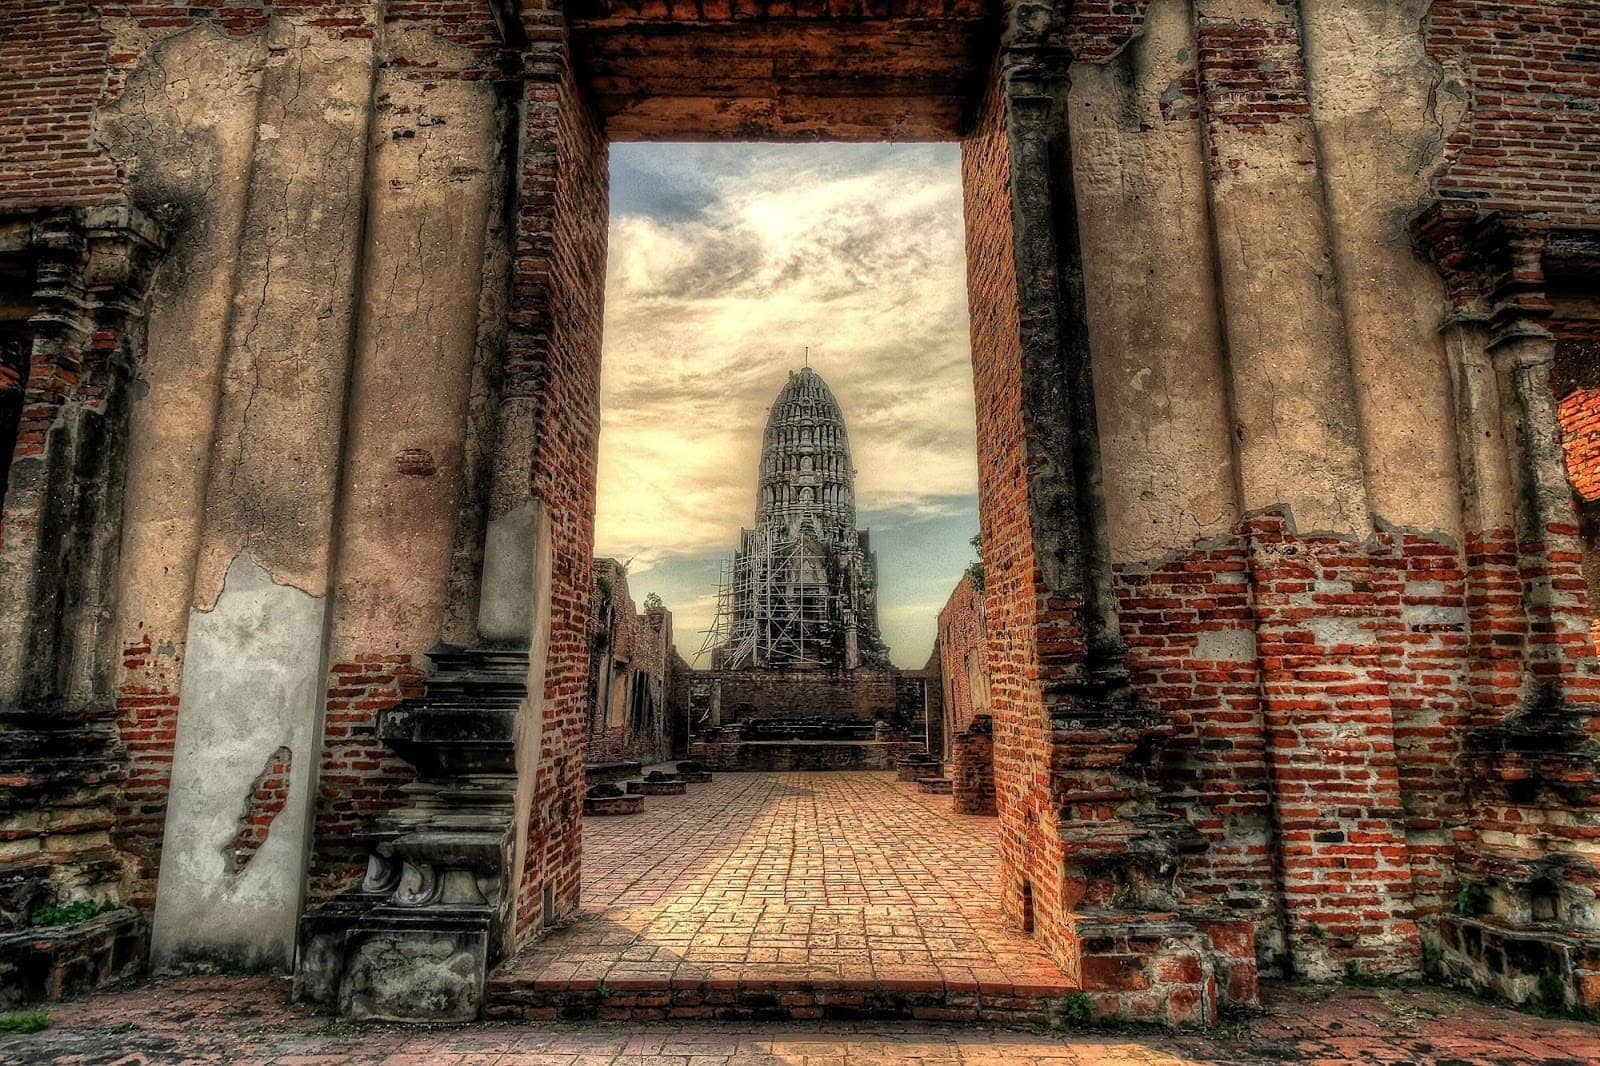 Wat Ratchaburana Prang Ayutthaya Thailand doorway large 2